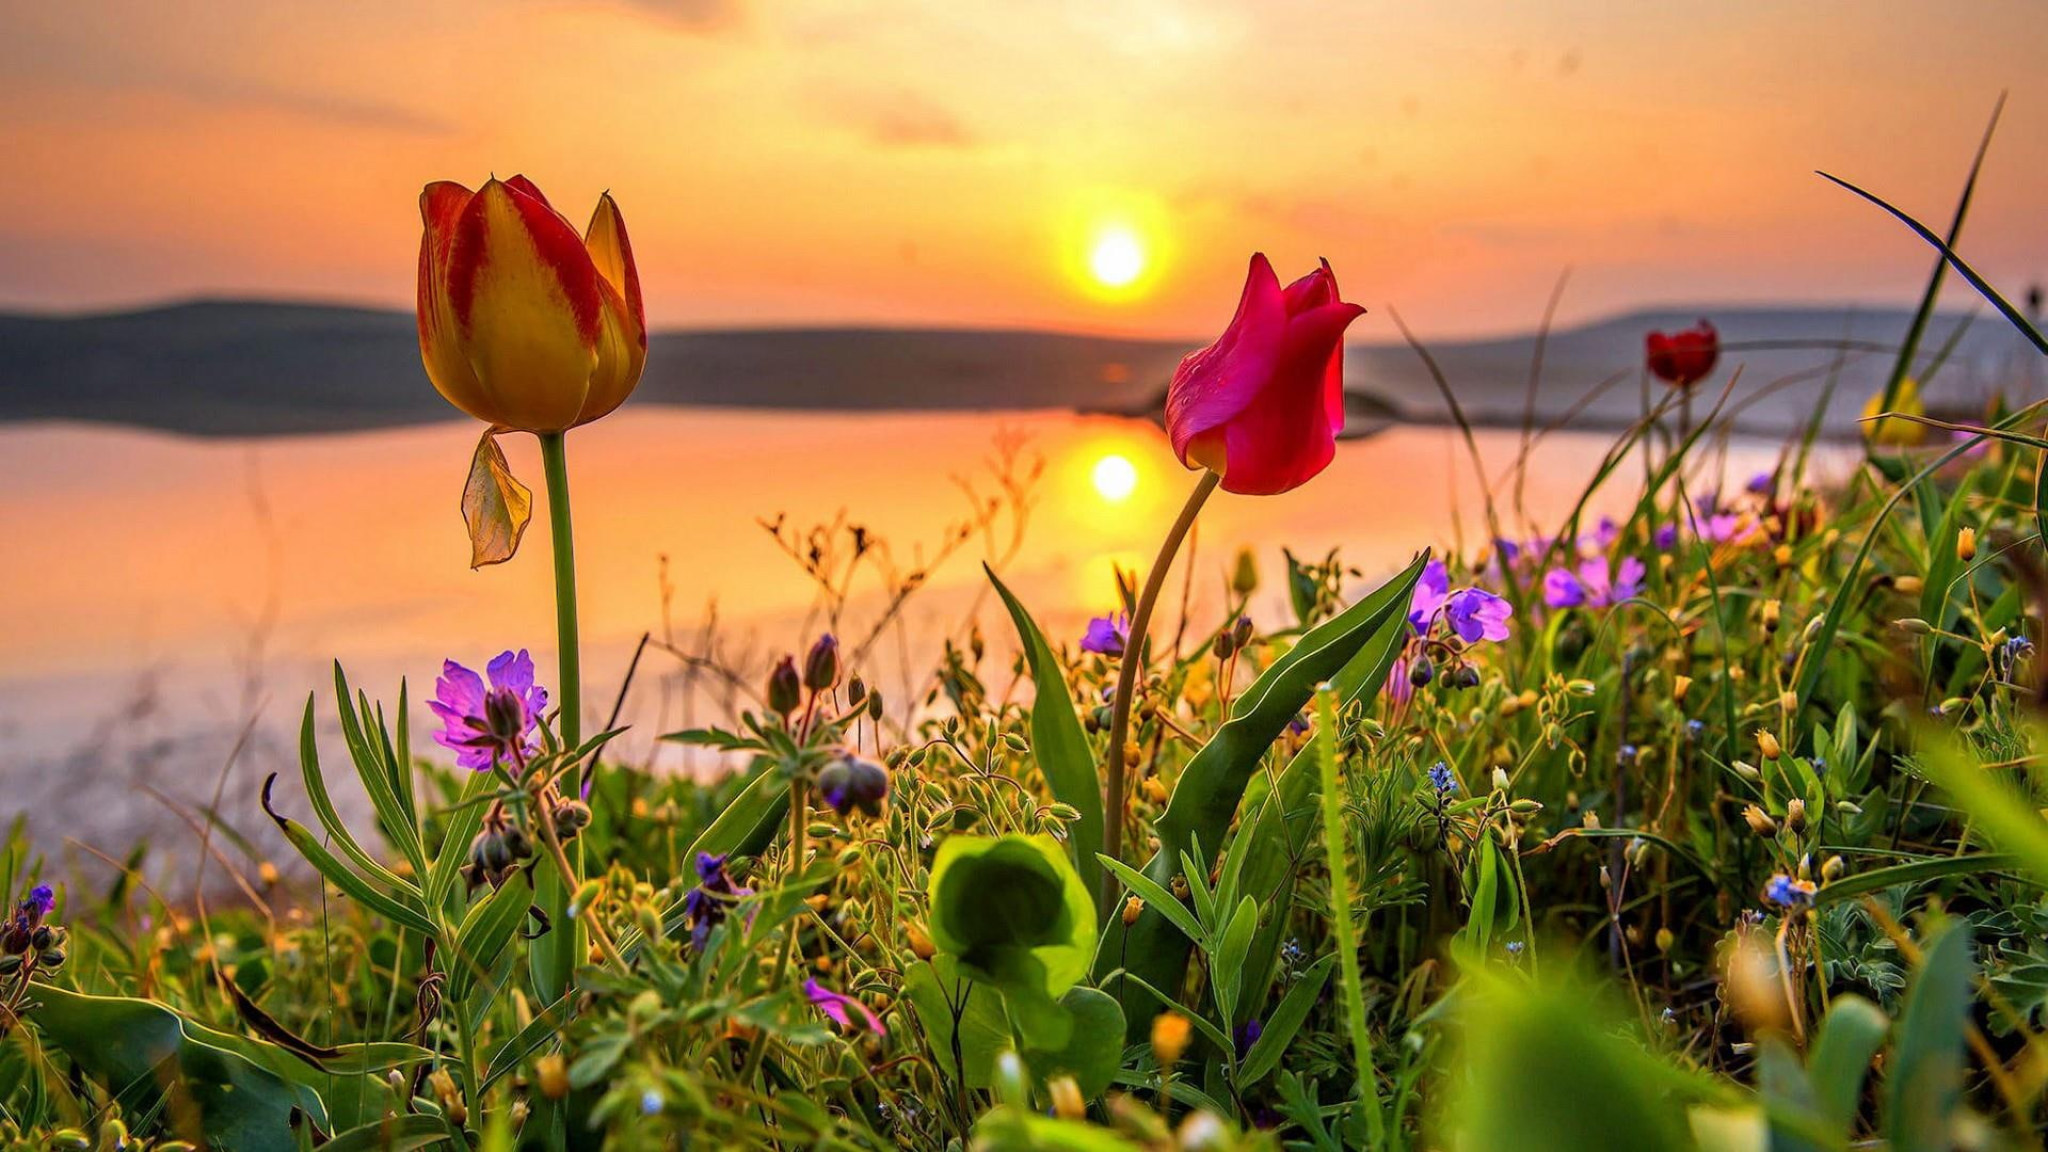 Flower Field, Crimea, Steppe, Evening, Tulips, Grass, Sunlight Wallpaper • Wallpaper For You